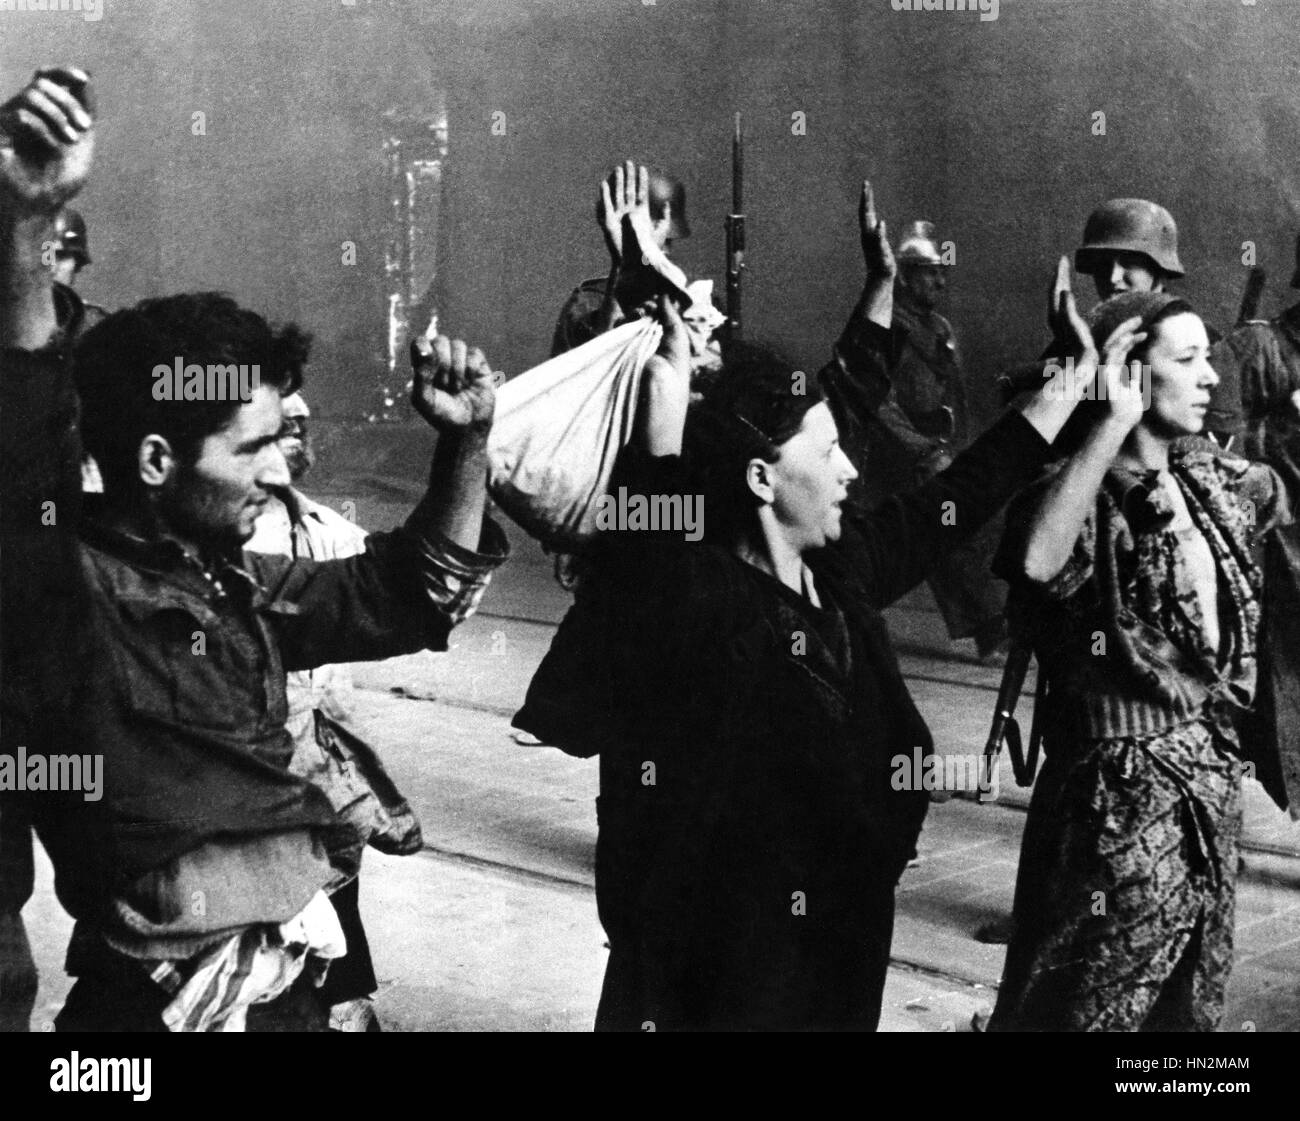 Ghetto di Varsavia: combattenti della resistenza arrestati dalla officiers tedesco del XX secolo la Polonia, la seconda guerra mondiale la guerra Centre de documentation juive Foto Stock